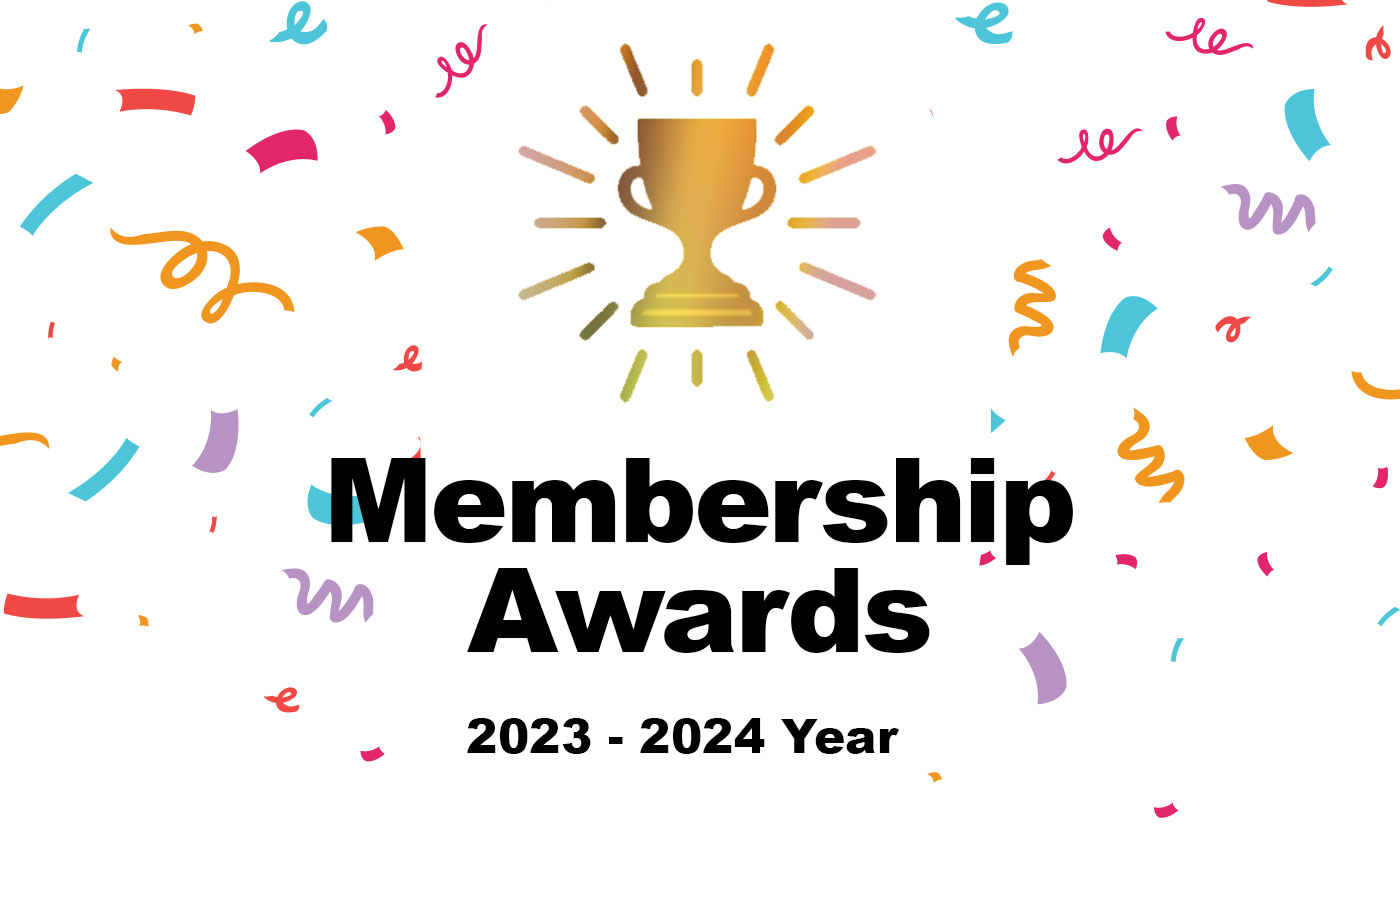 Membership Awards 2023-2024